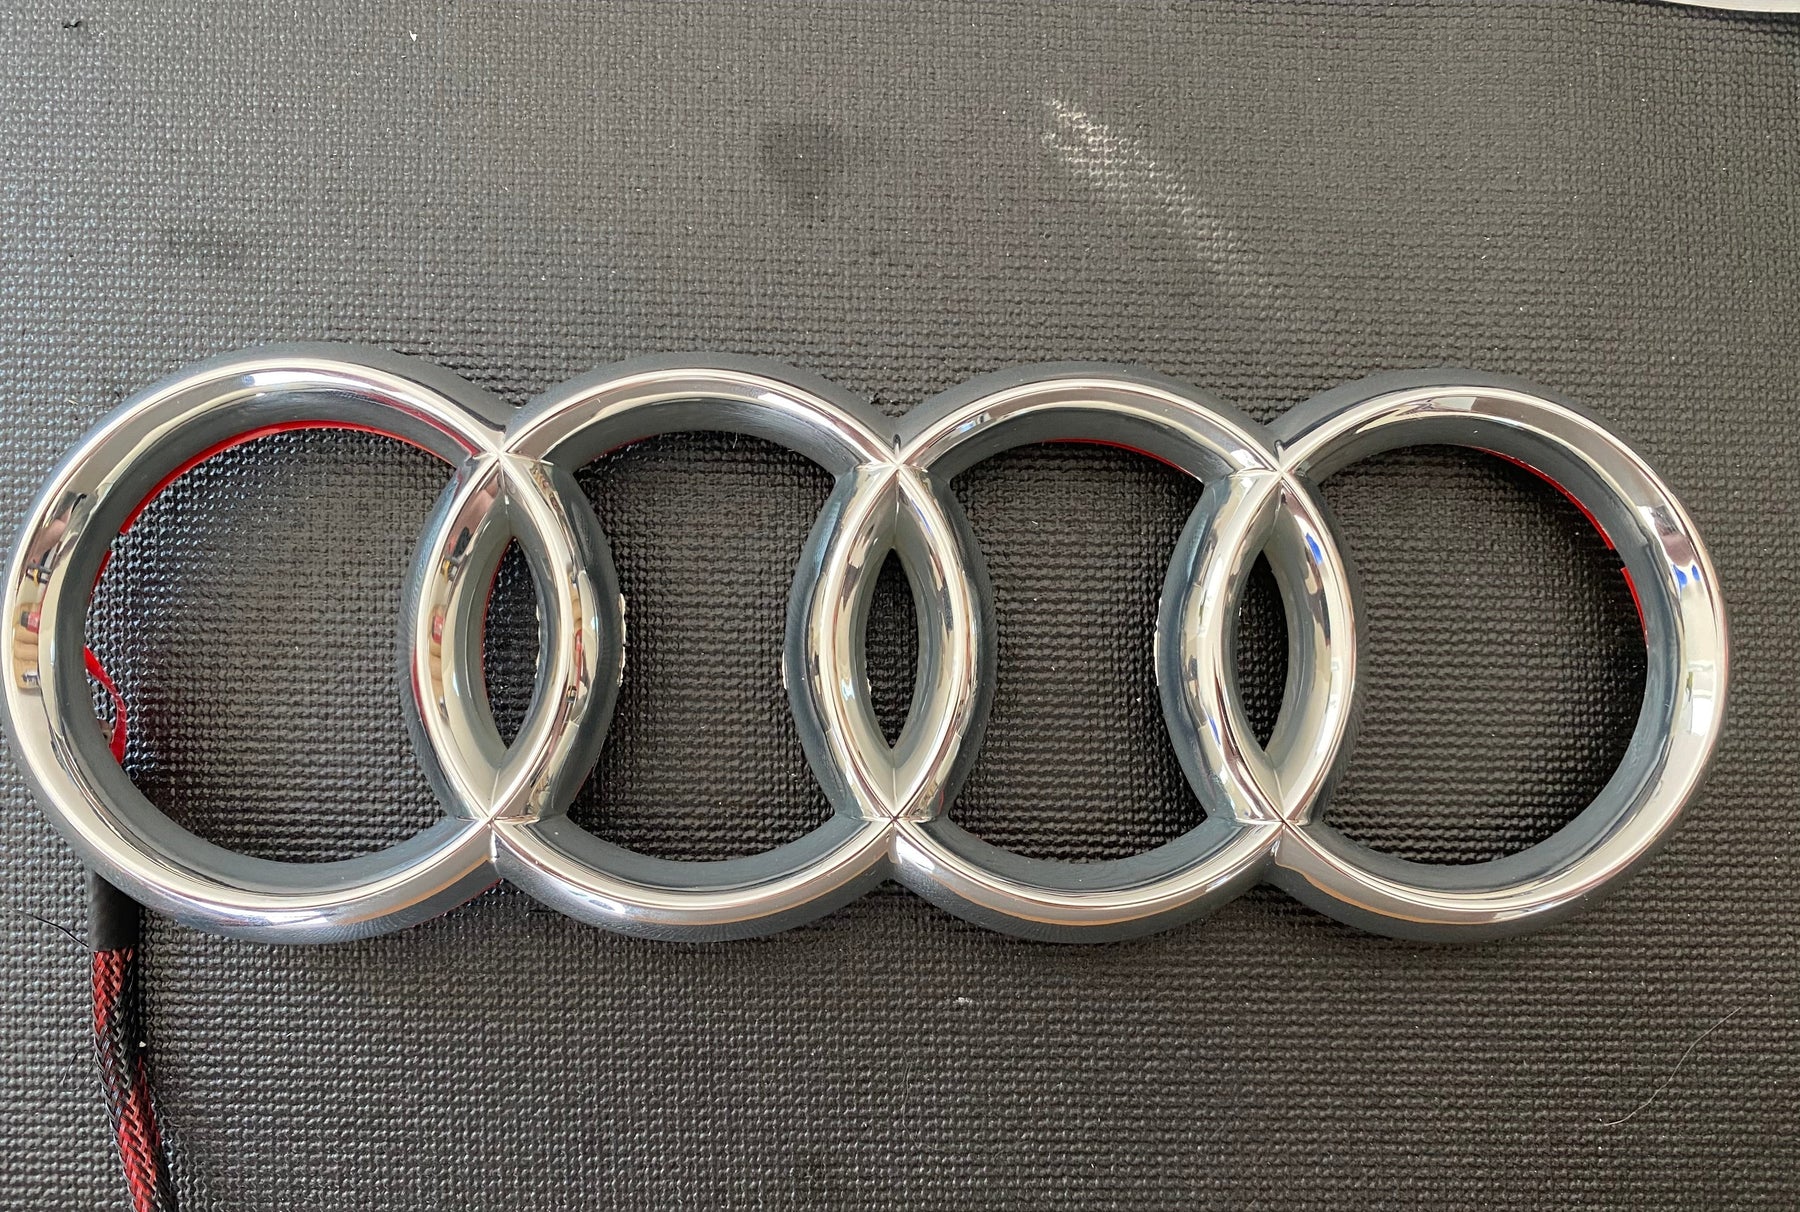 White Animated Startup Dynamic LED Audi Rings Emblem Logo Badge (273mm–